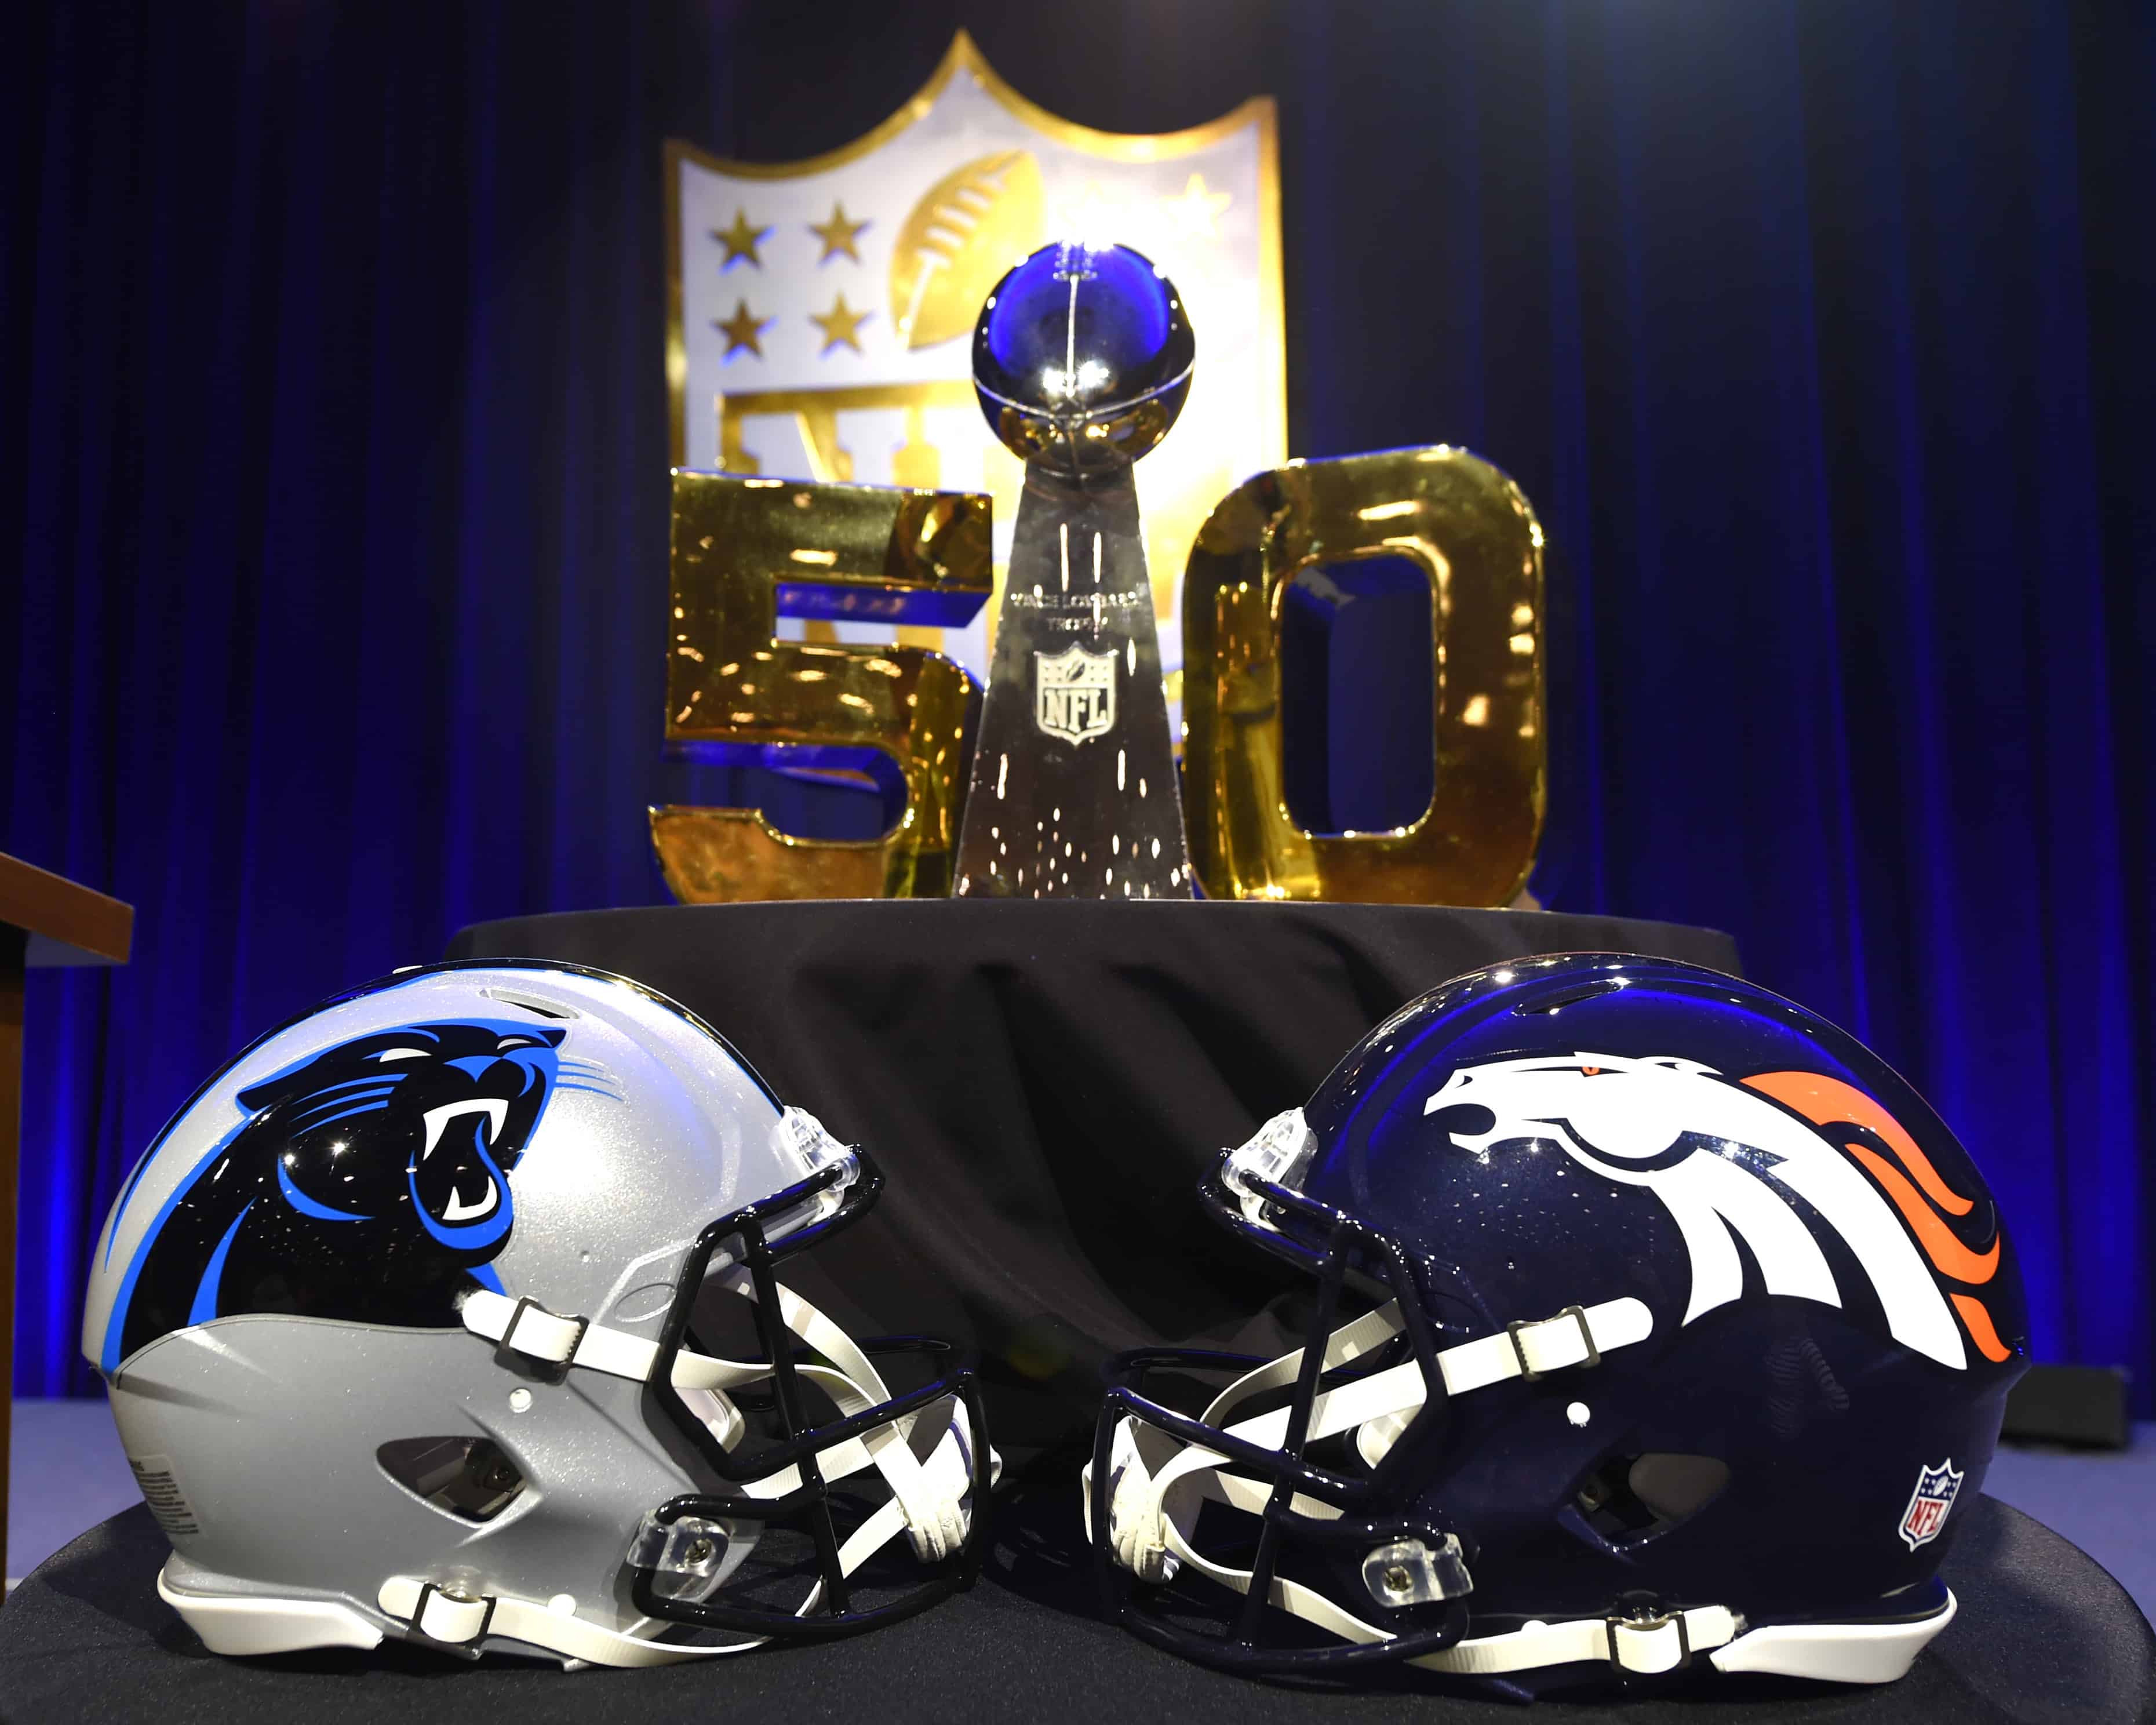 Super Bowl 50 with Carolina Panthers vs. Denver Broncos